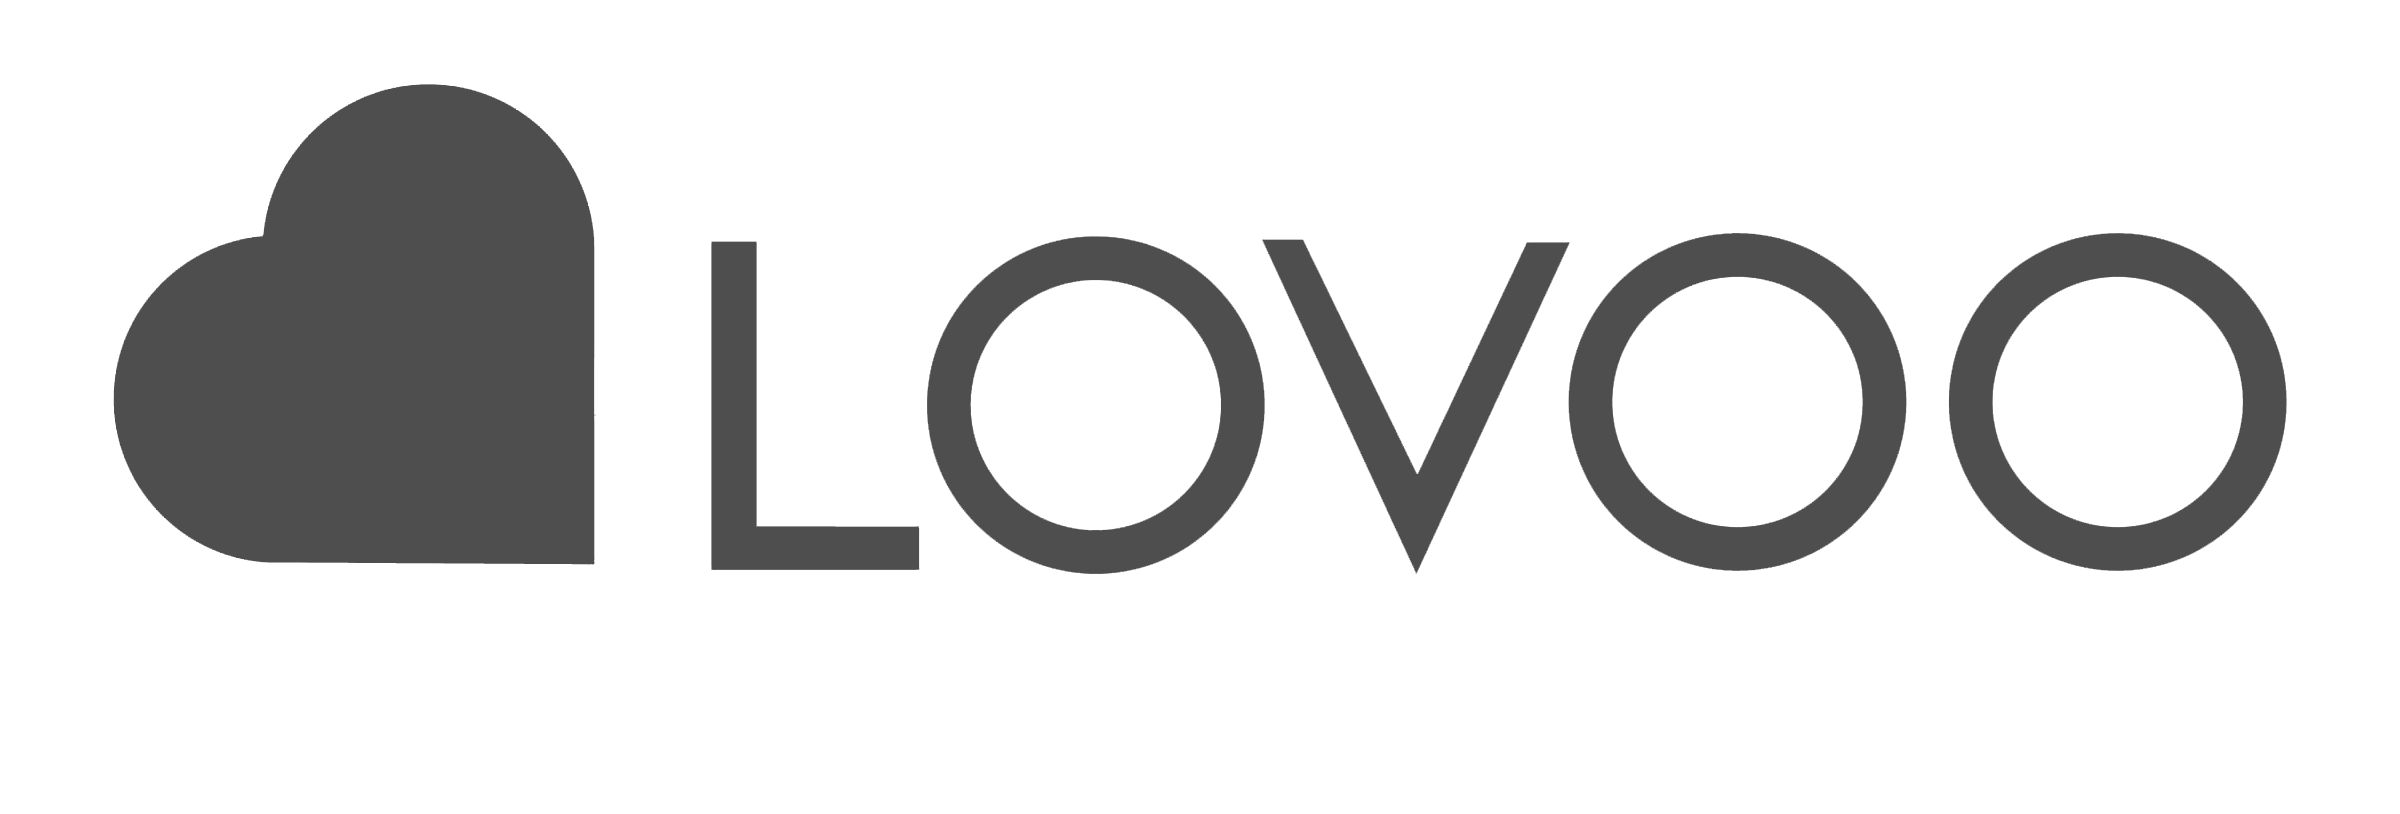 lovoo-logo Kopie